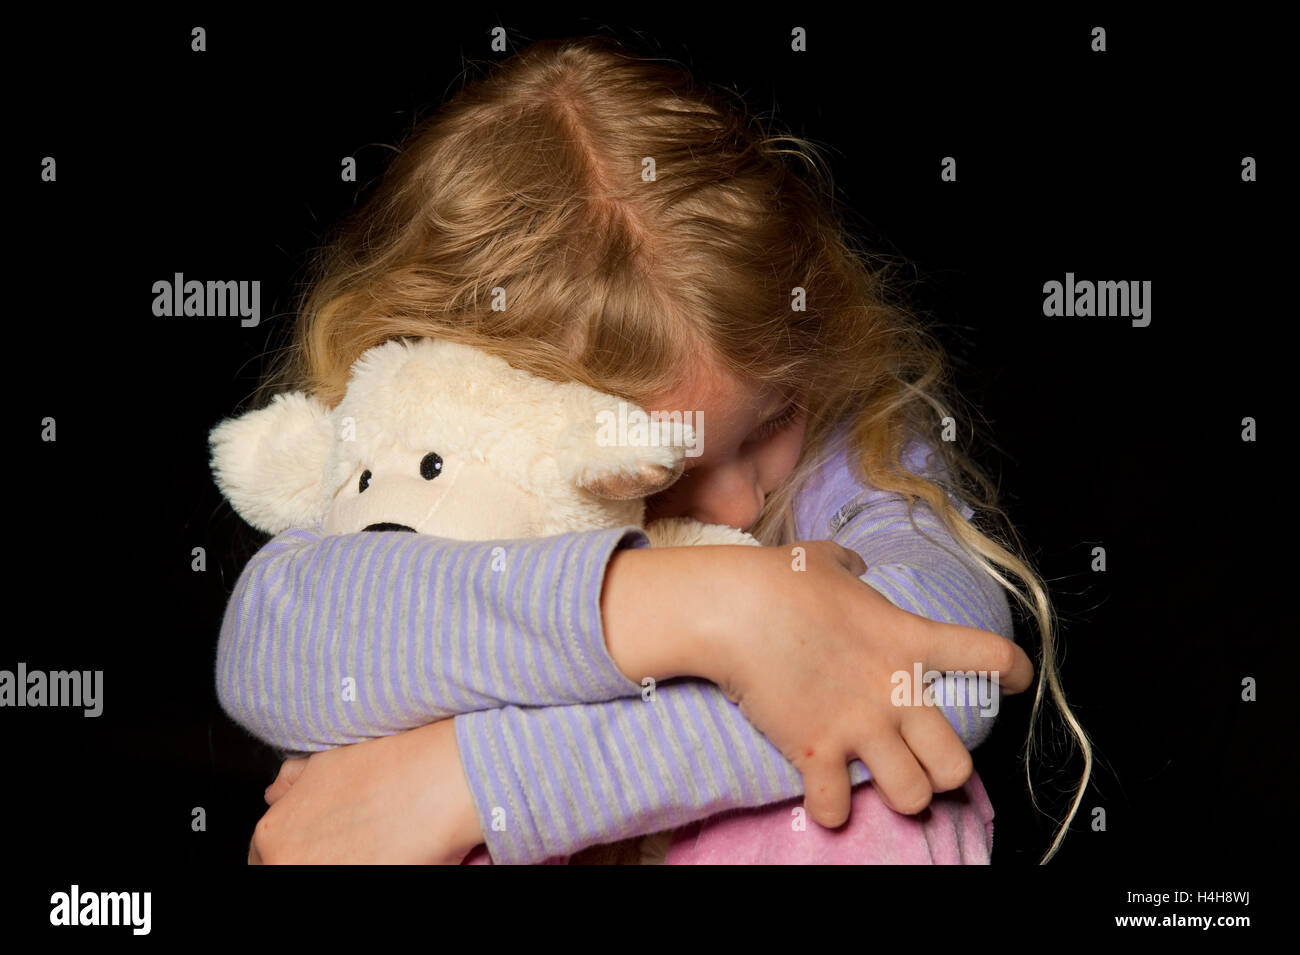 Kauernde Mädchen, symbolisches Bild für Kindesmissbrauch Stockfoto